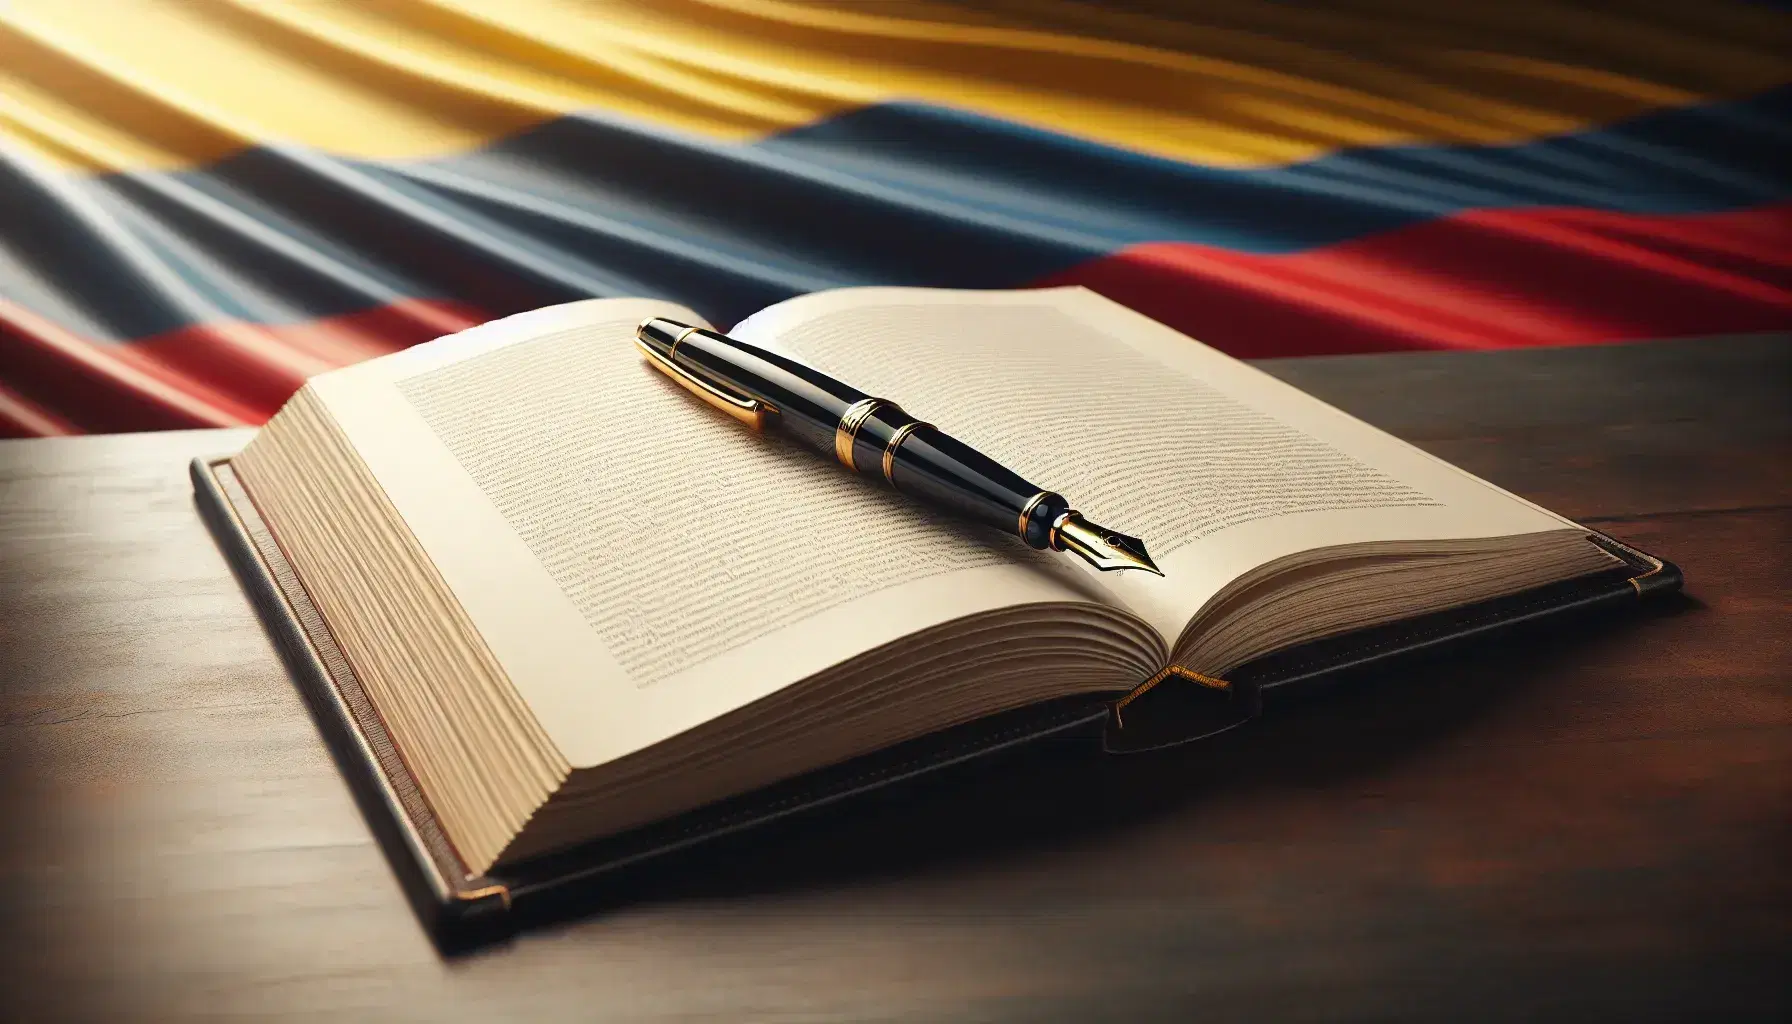 Primer plano de un libro abierto con páginas en color crema sobre una superficie de madera oscura, acompañado de una pluma fuente negra y la bandera de Colombia al fondo.